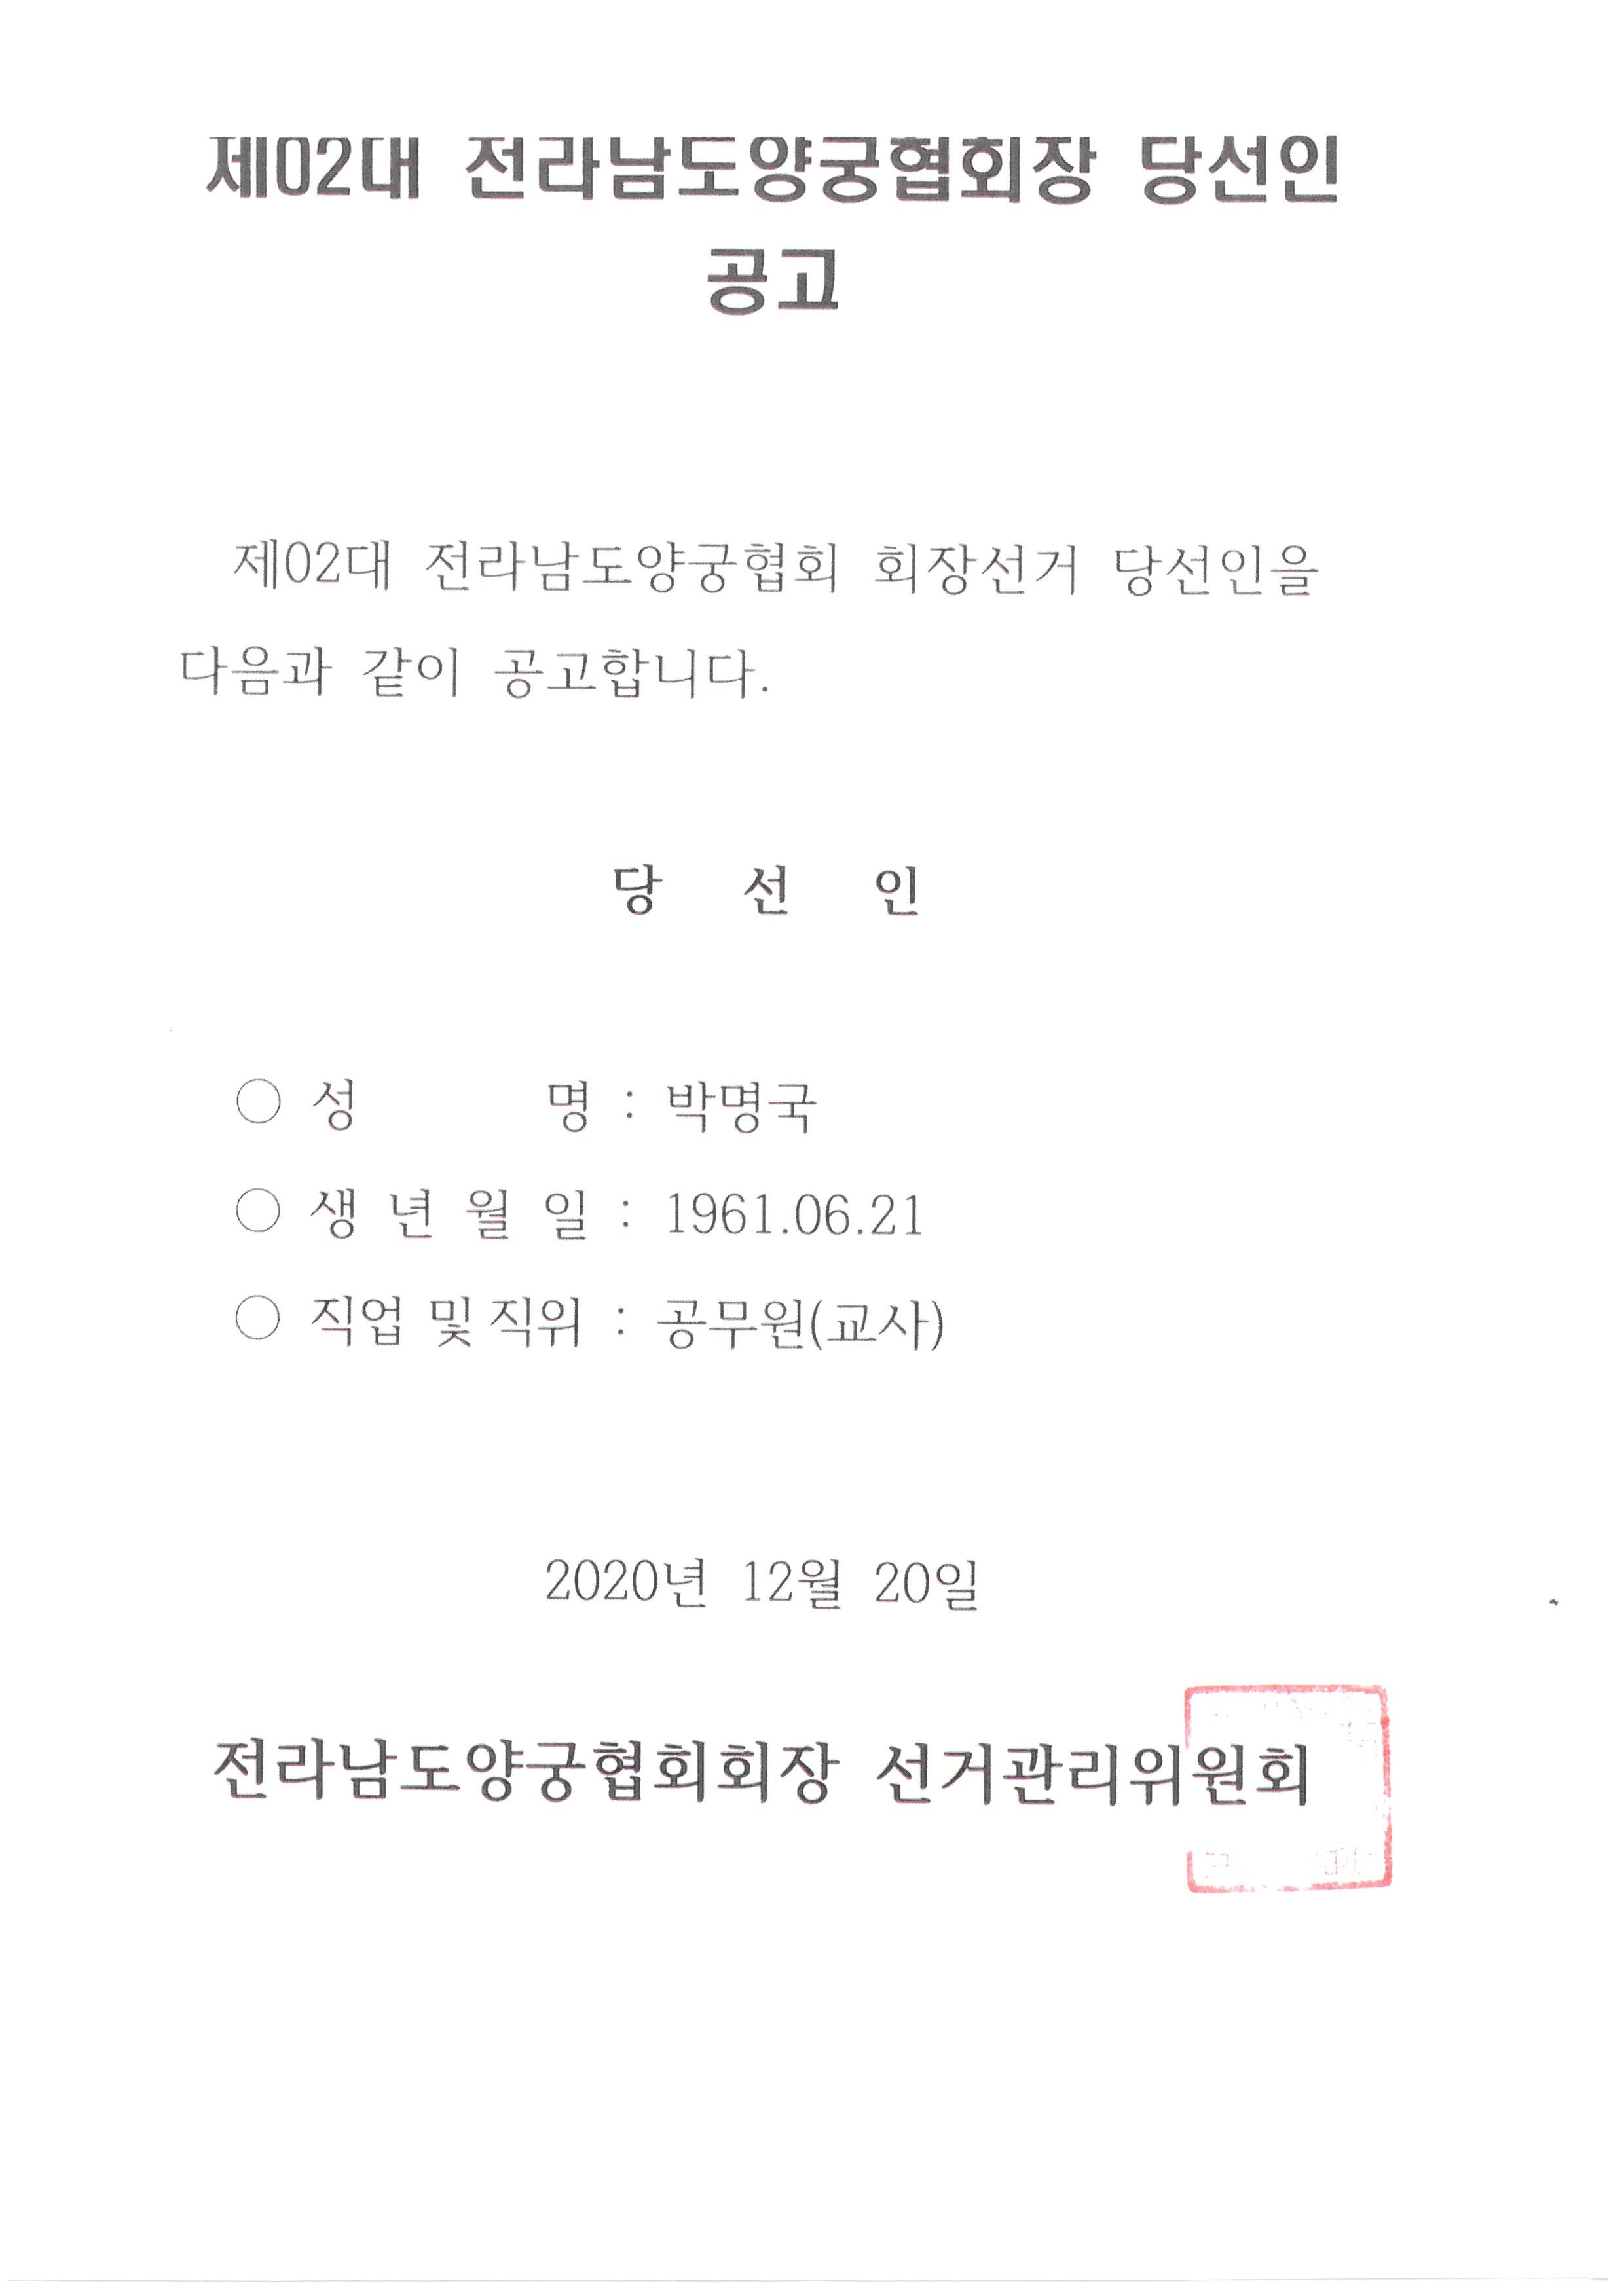 제2대 전남양궁협회 회장 선거 당선인 공고 파일